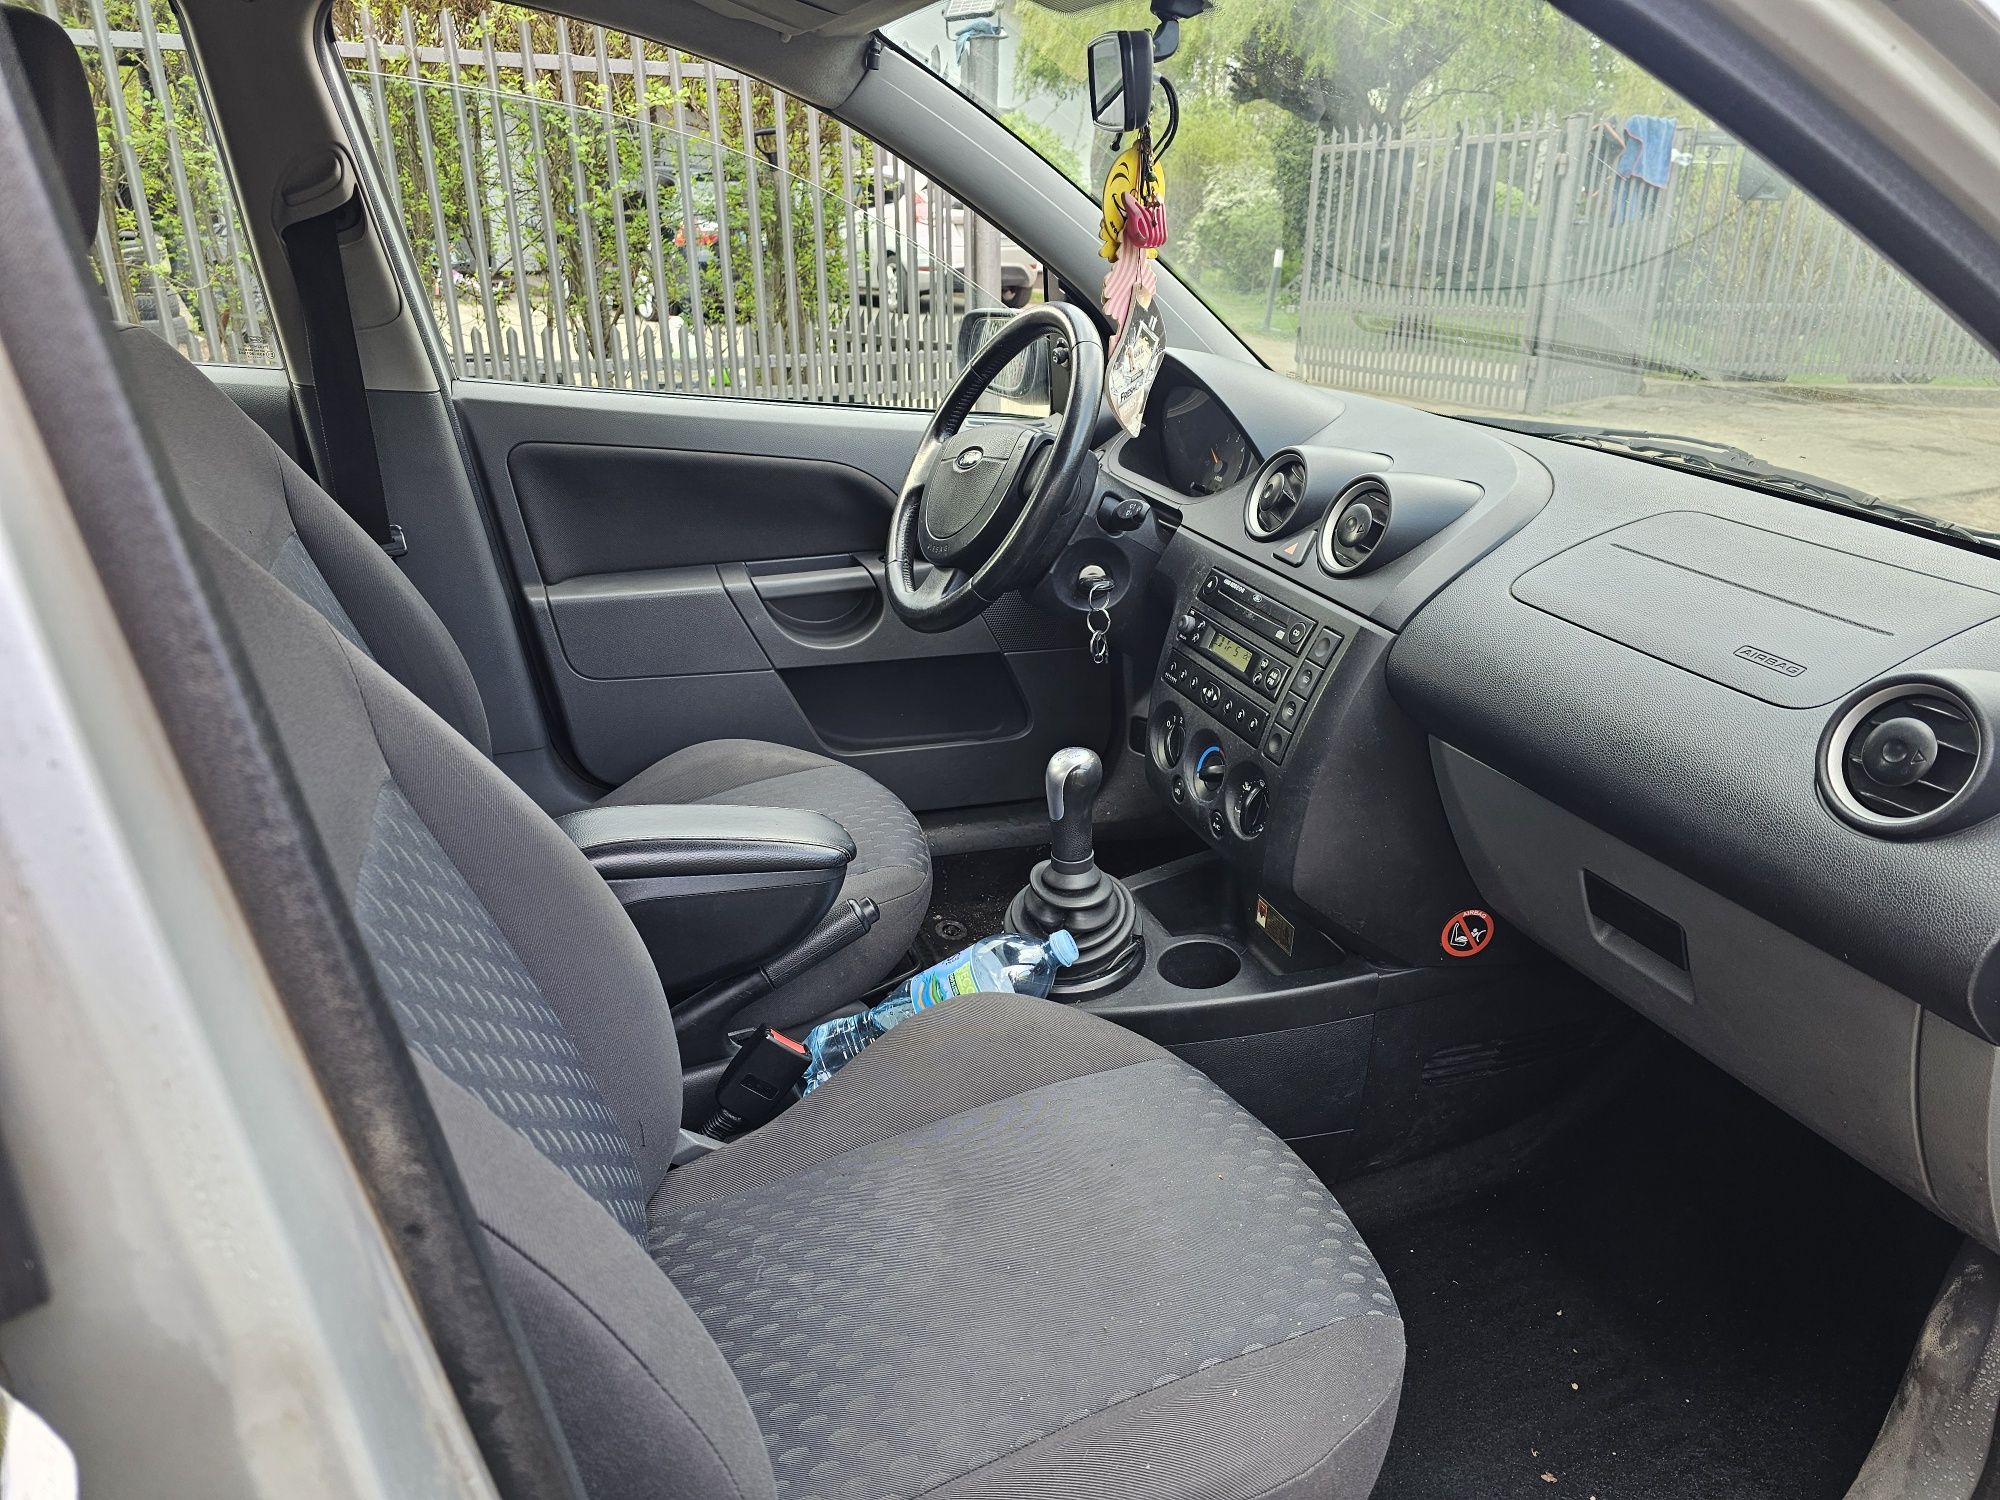 Ford Fiesta 1.4 tdci 5 drzwi Zrobione Zawieszenie do Jazdy